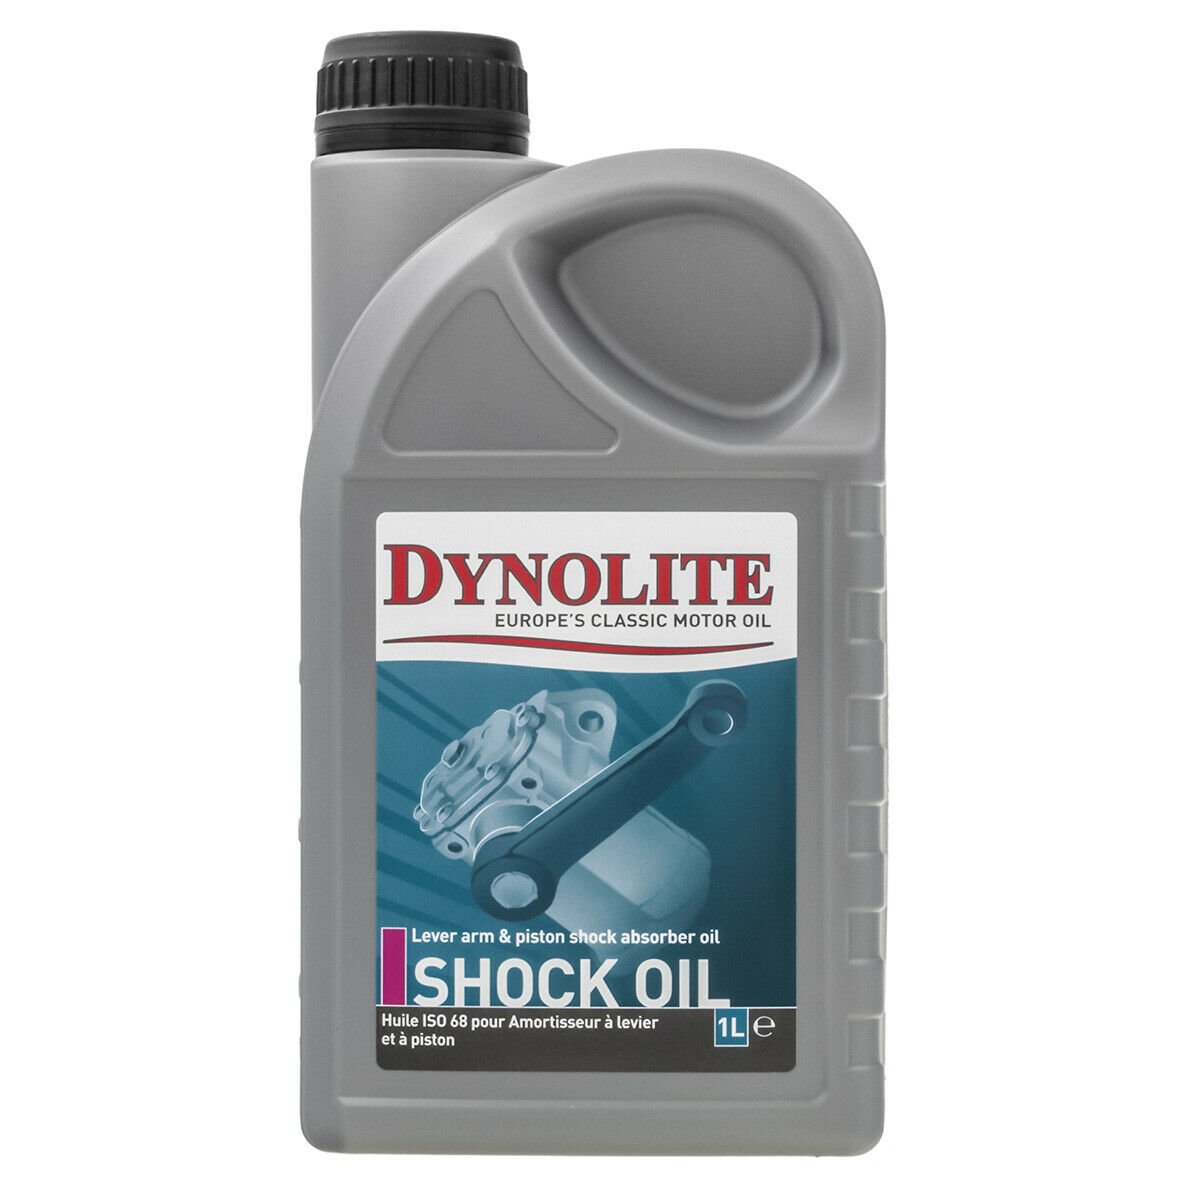 Shock Oil.jpg